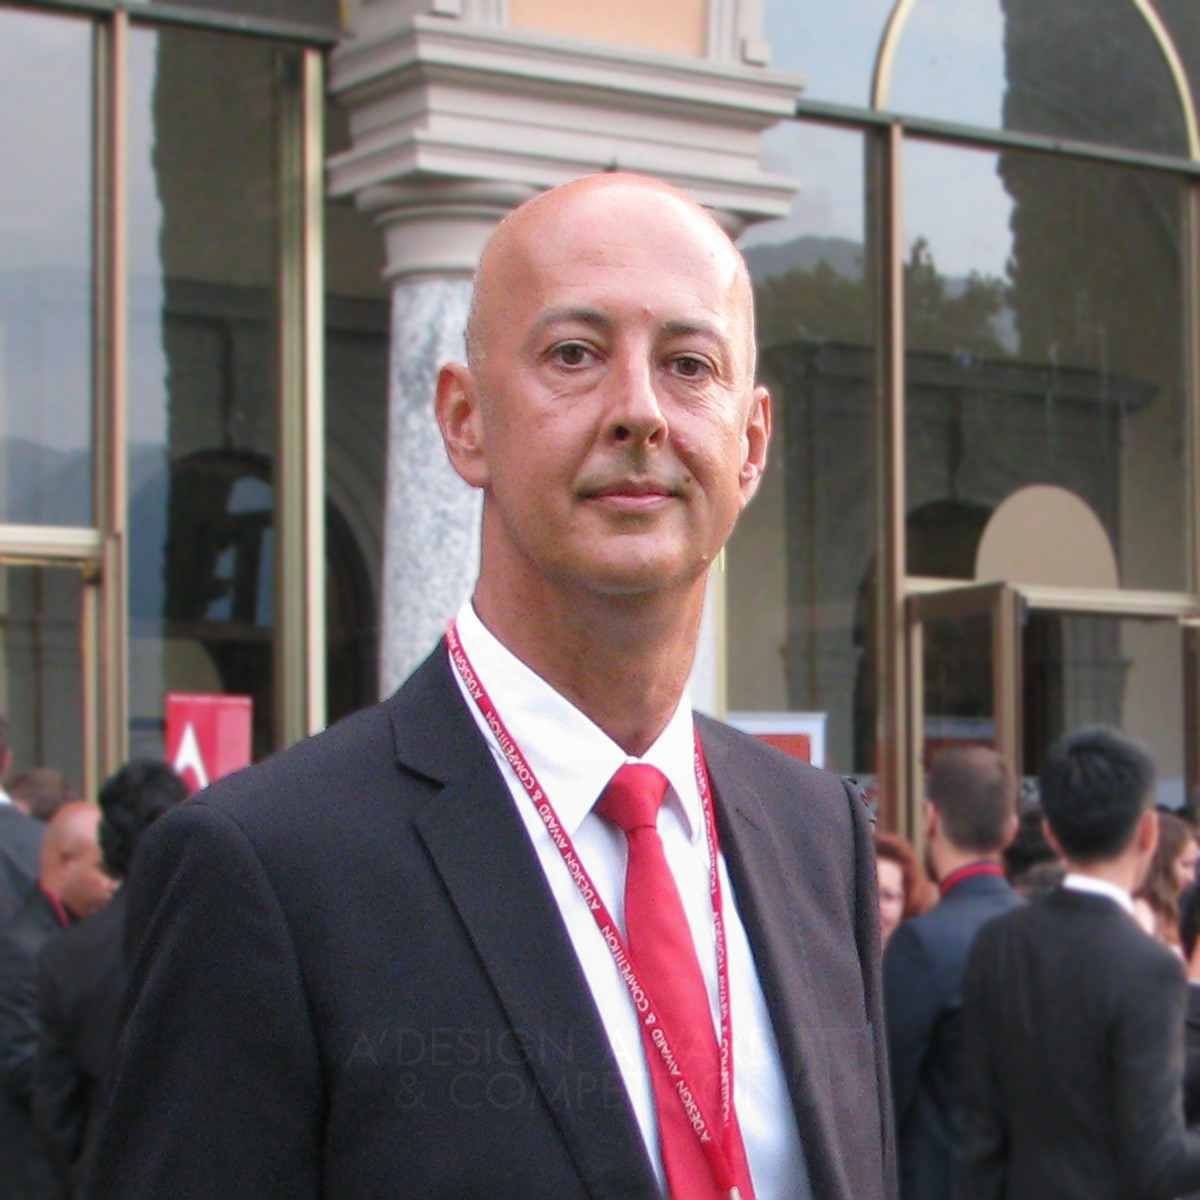 Dr Aleksandar Rudnik Milanovic